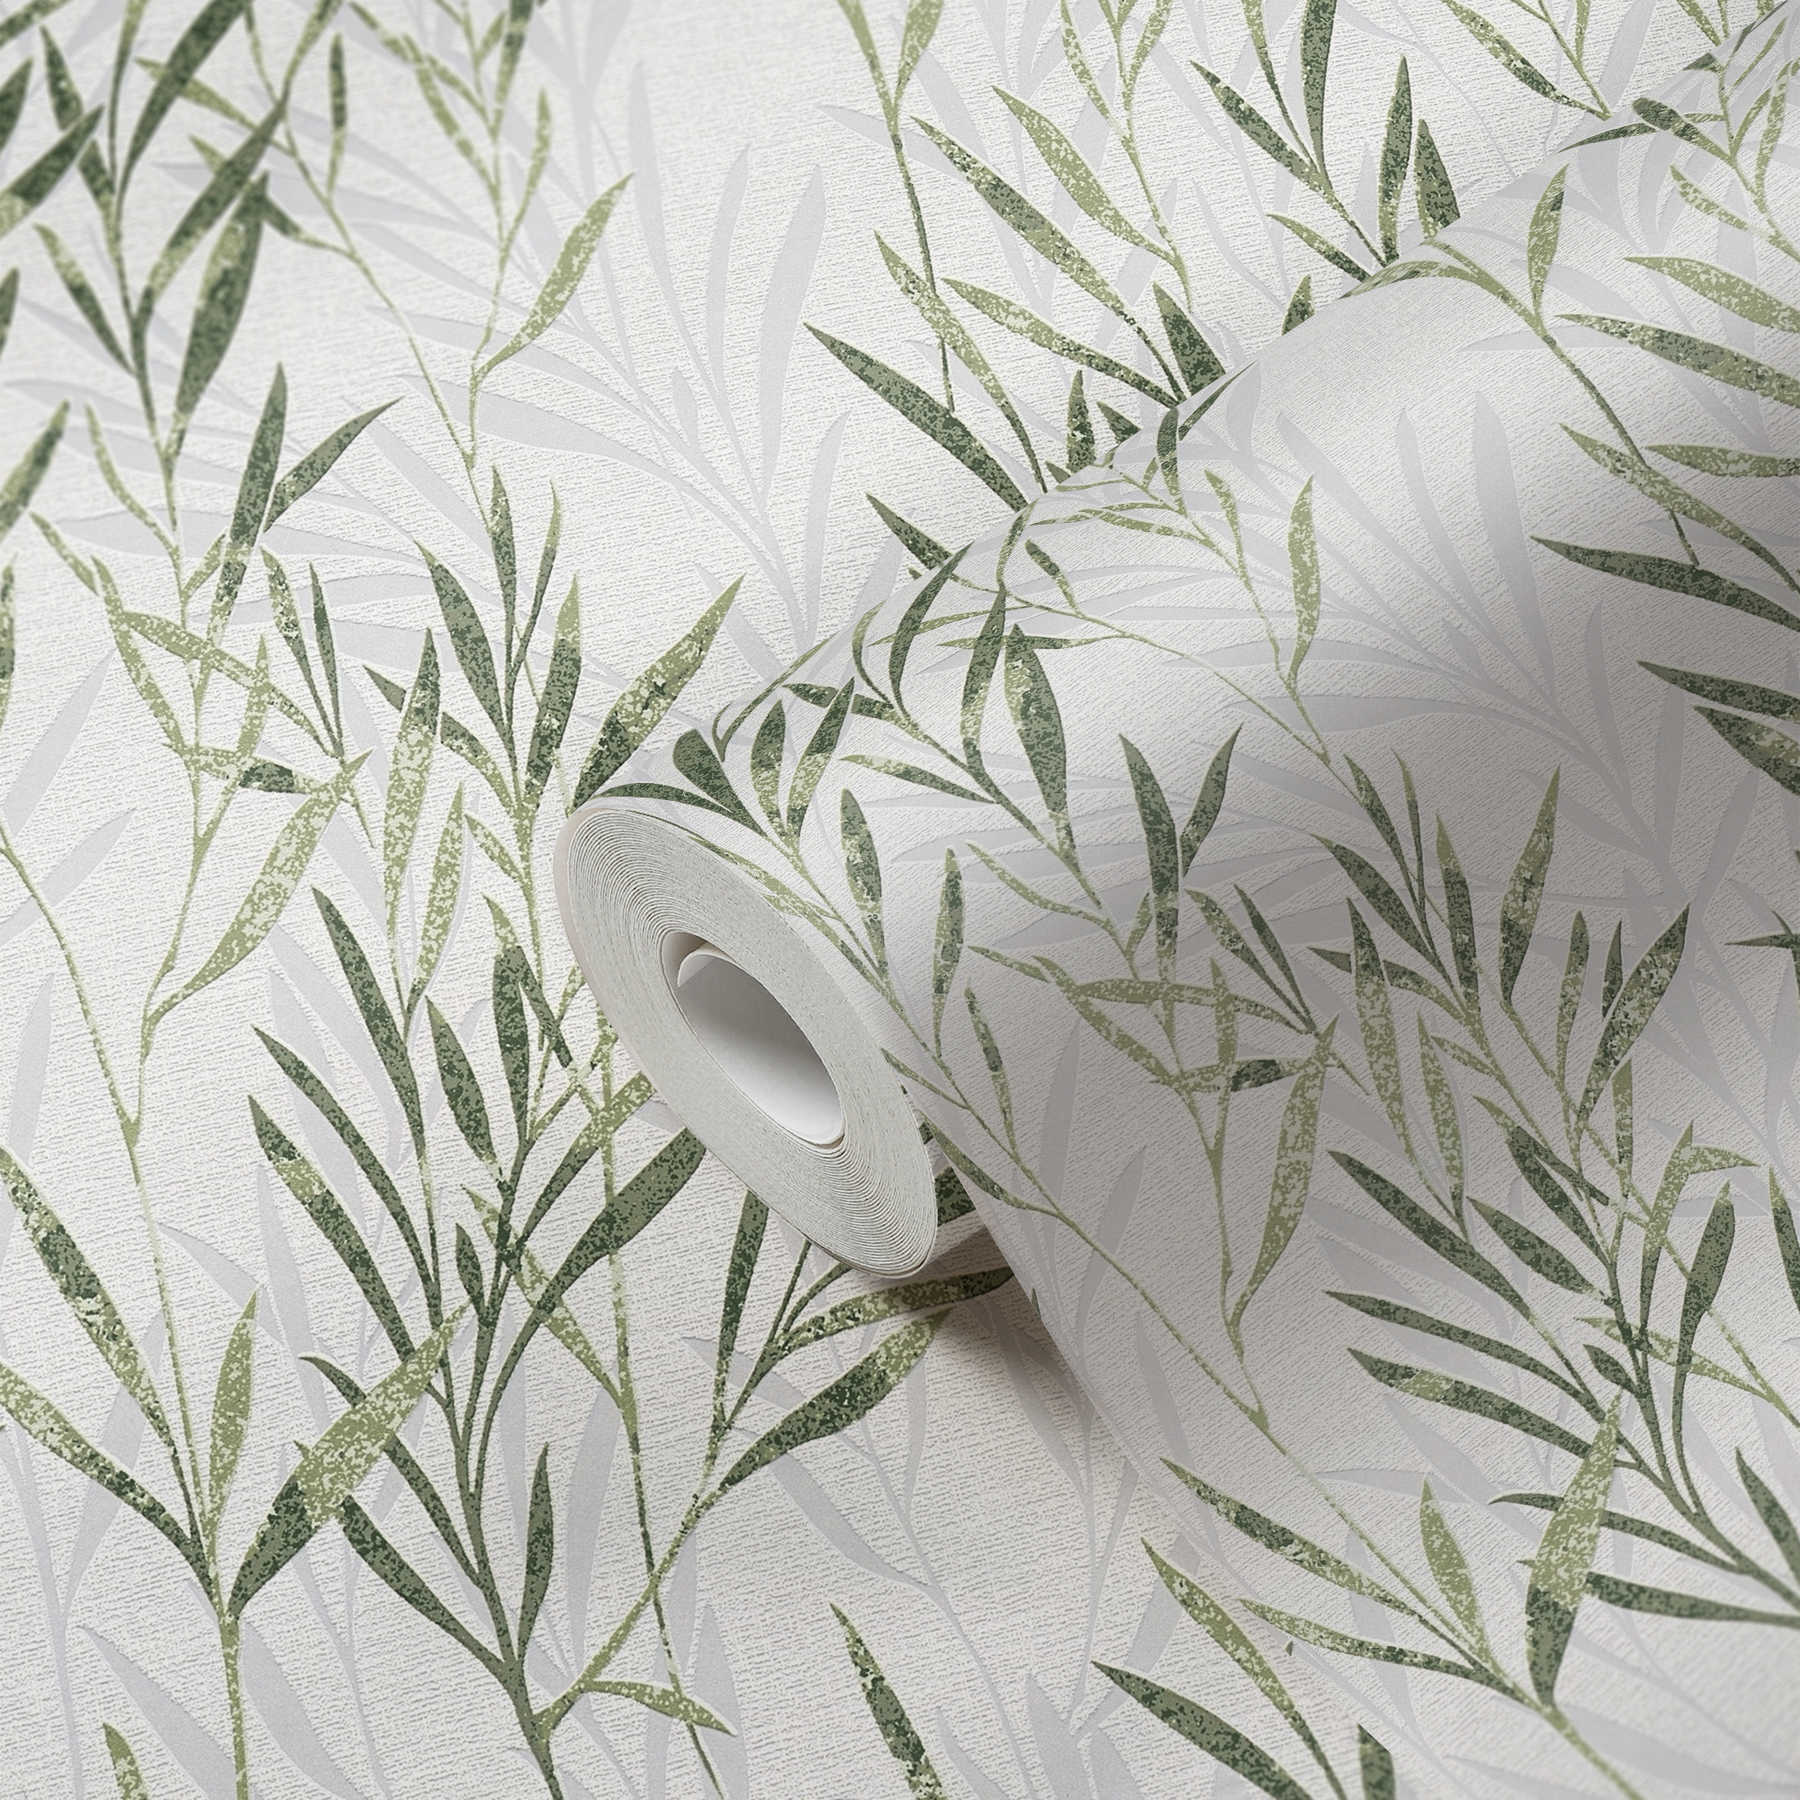             Non-woven wallpaper leaves design & tendril pattern - green, white
        